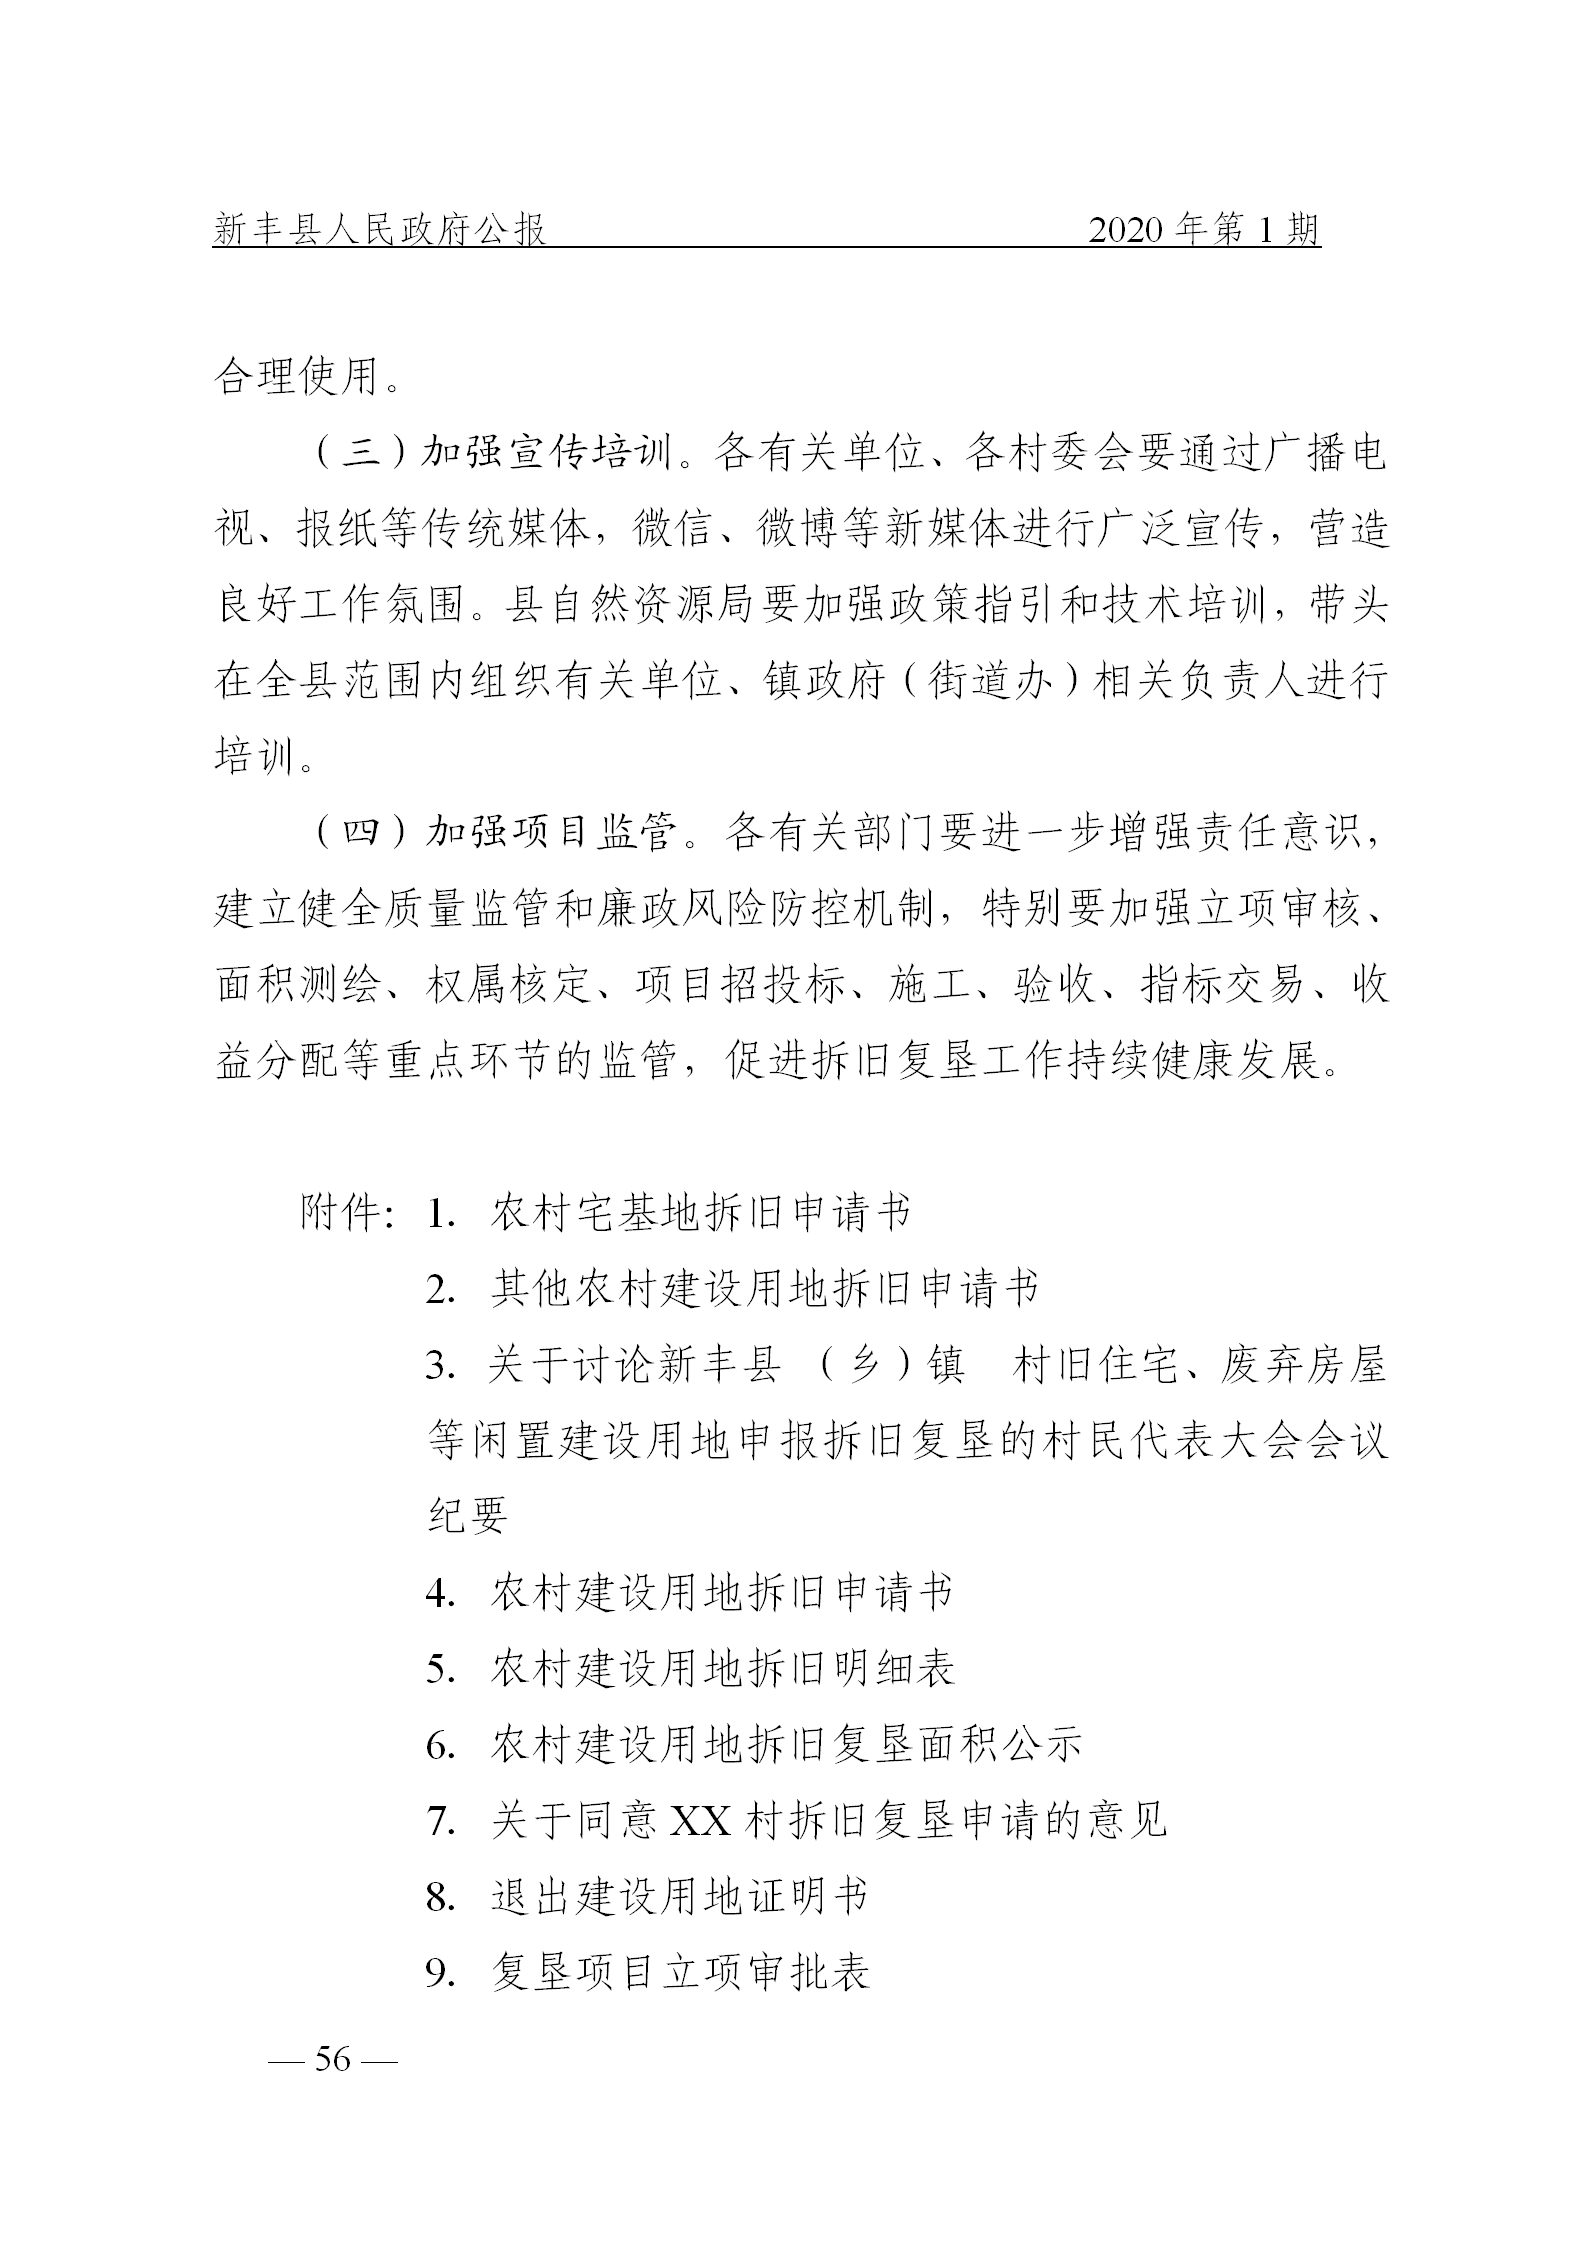 《新丰县人民政府公报》2020年第1期(1)_56.png